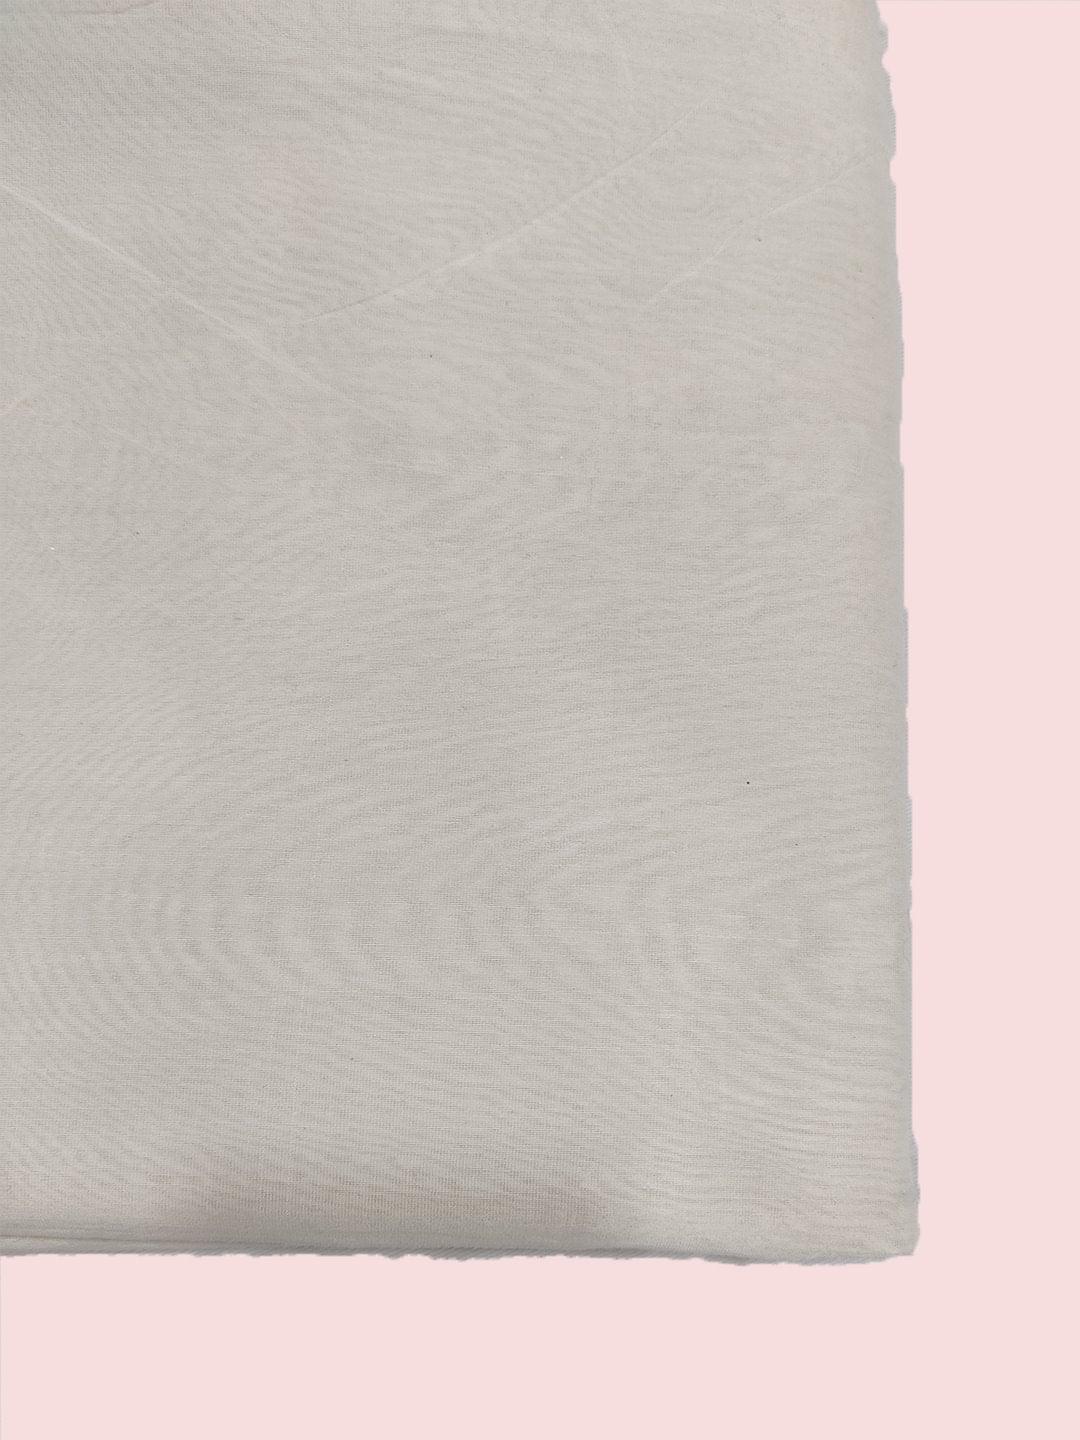 Chanderi Silk Fabric ( 44" Inch ) Ready to Dye Fabrics